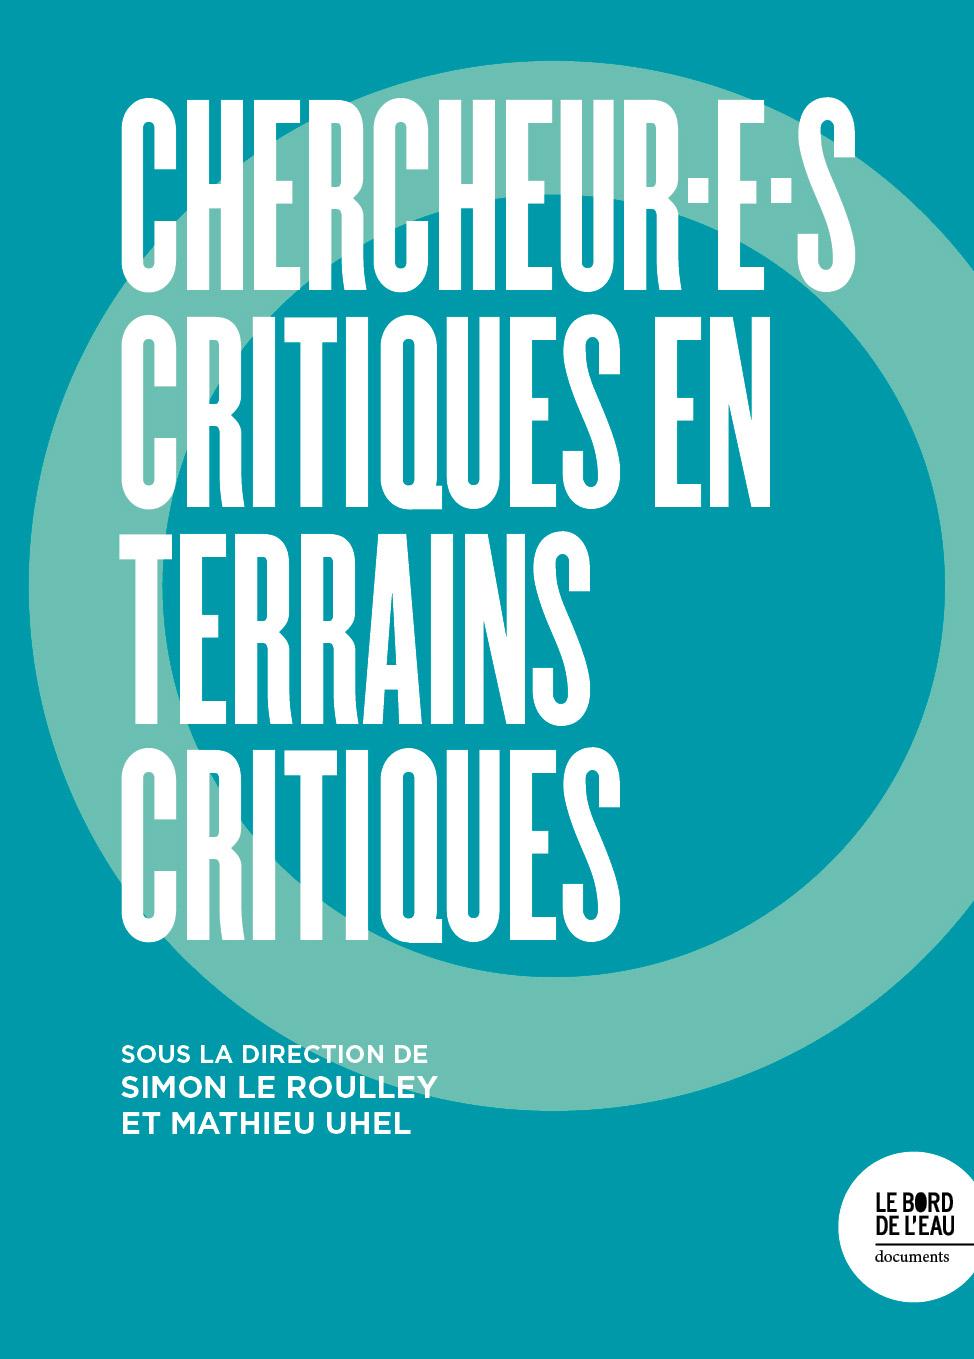 Chercheur.e.s Critiques En Terrains Critiques est paru